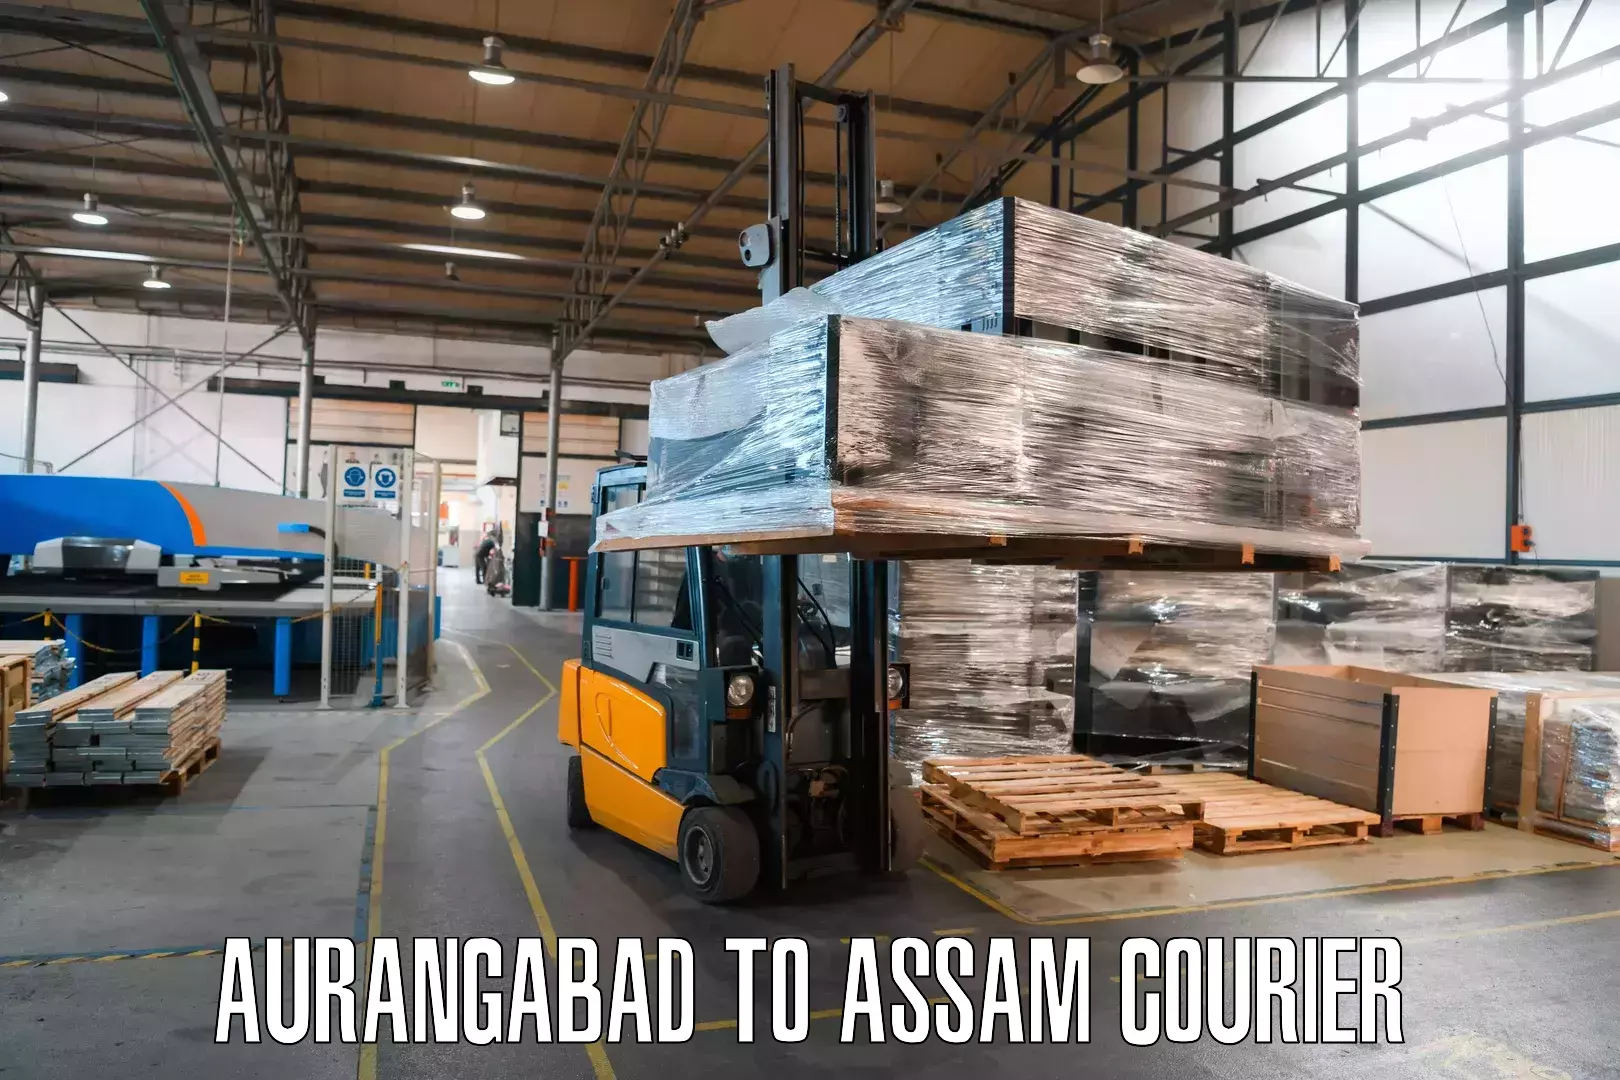 Delivery service partnership Aurangabad to Amoni